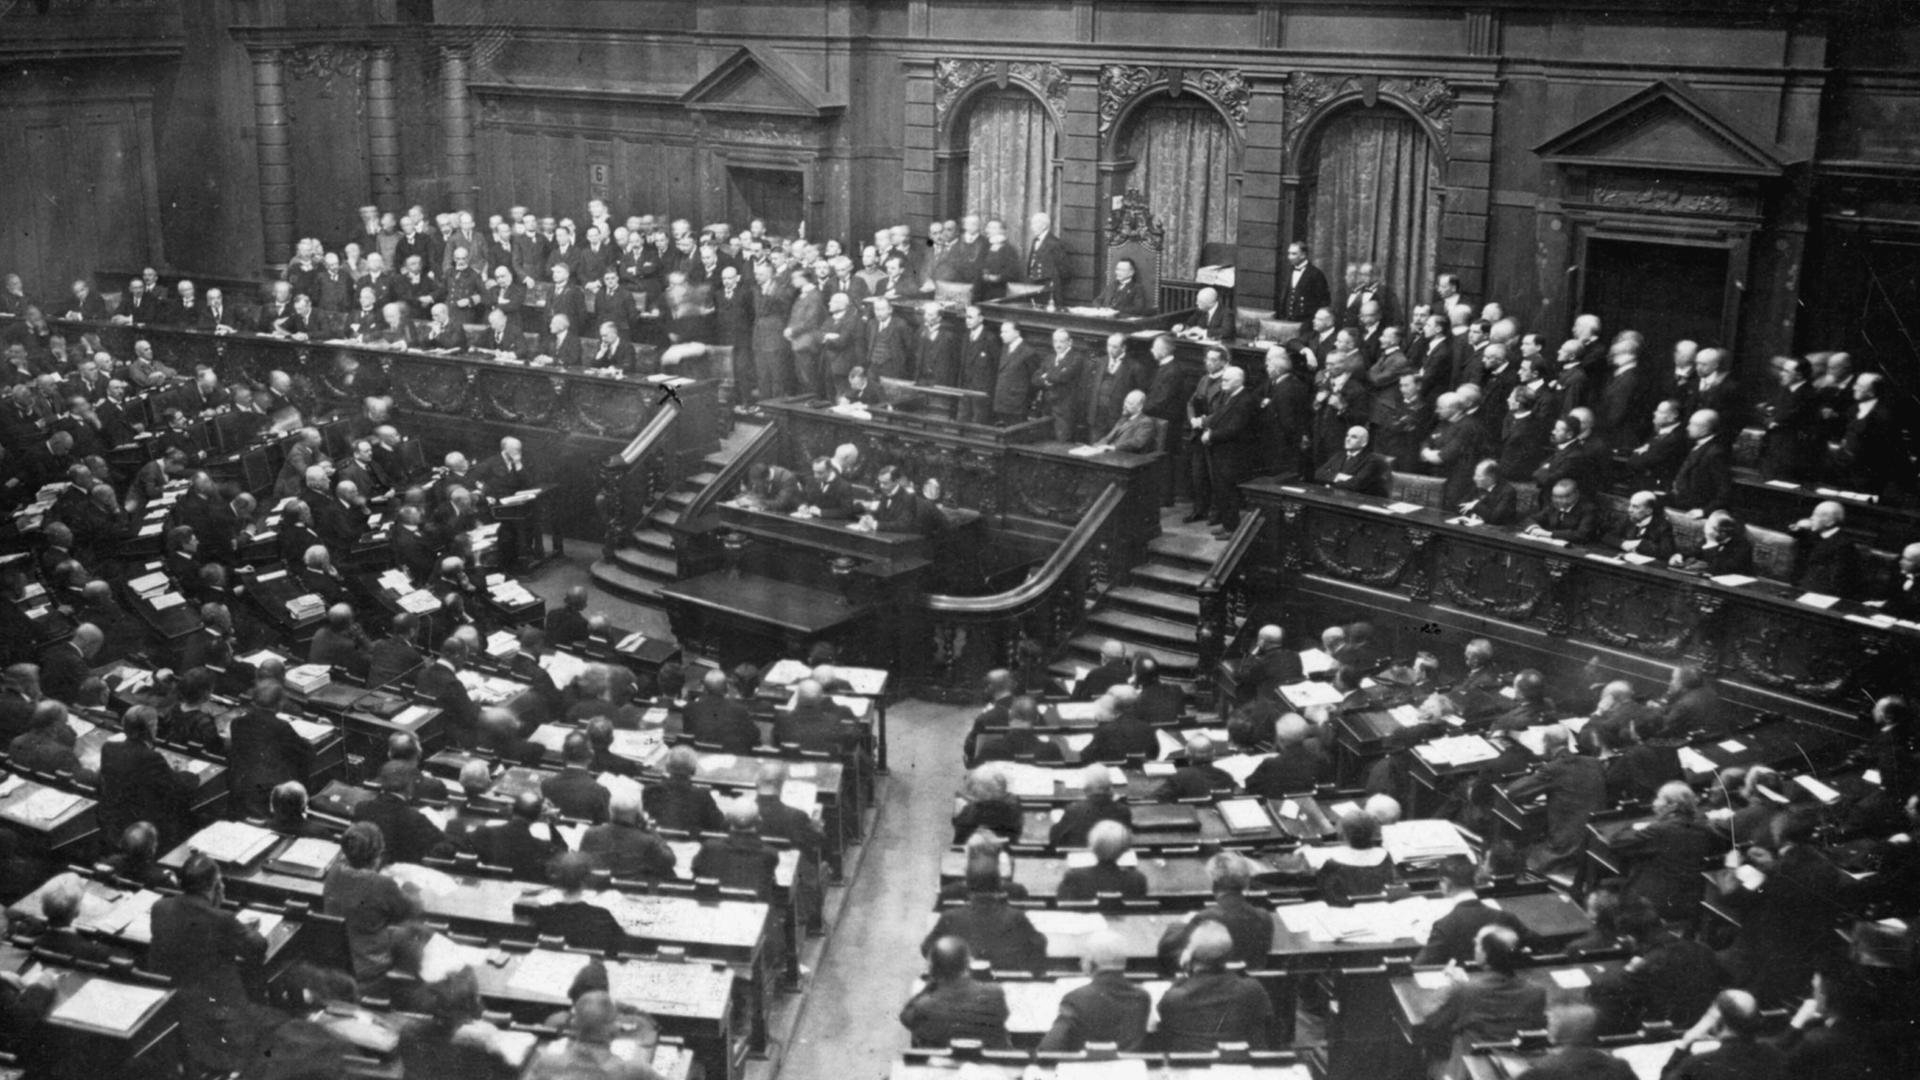 Rede von Reichskanzler Wilhelm Cuno im Reichstag, in der er den Protest der Regierung zur Ruhrbesetzung durch französische und belgische Truppen ab 11.1.1923, zum Ausdruck bringt. Blick in den Plenarsaal, während der Rede von Reichskanzler Cunos